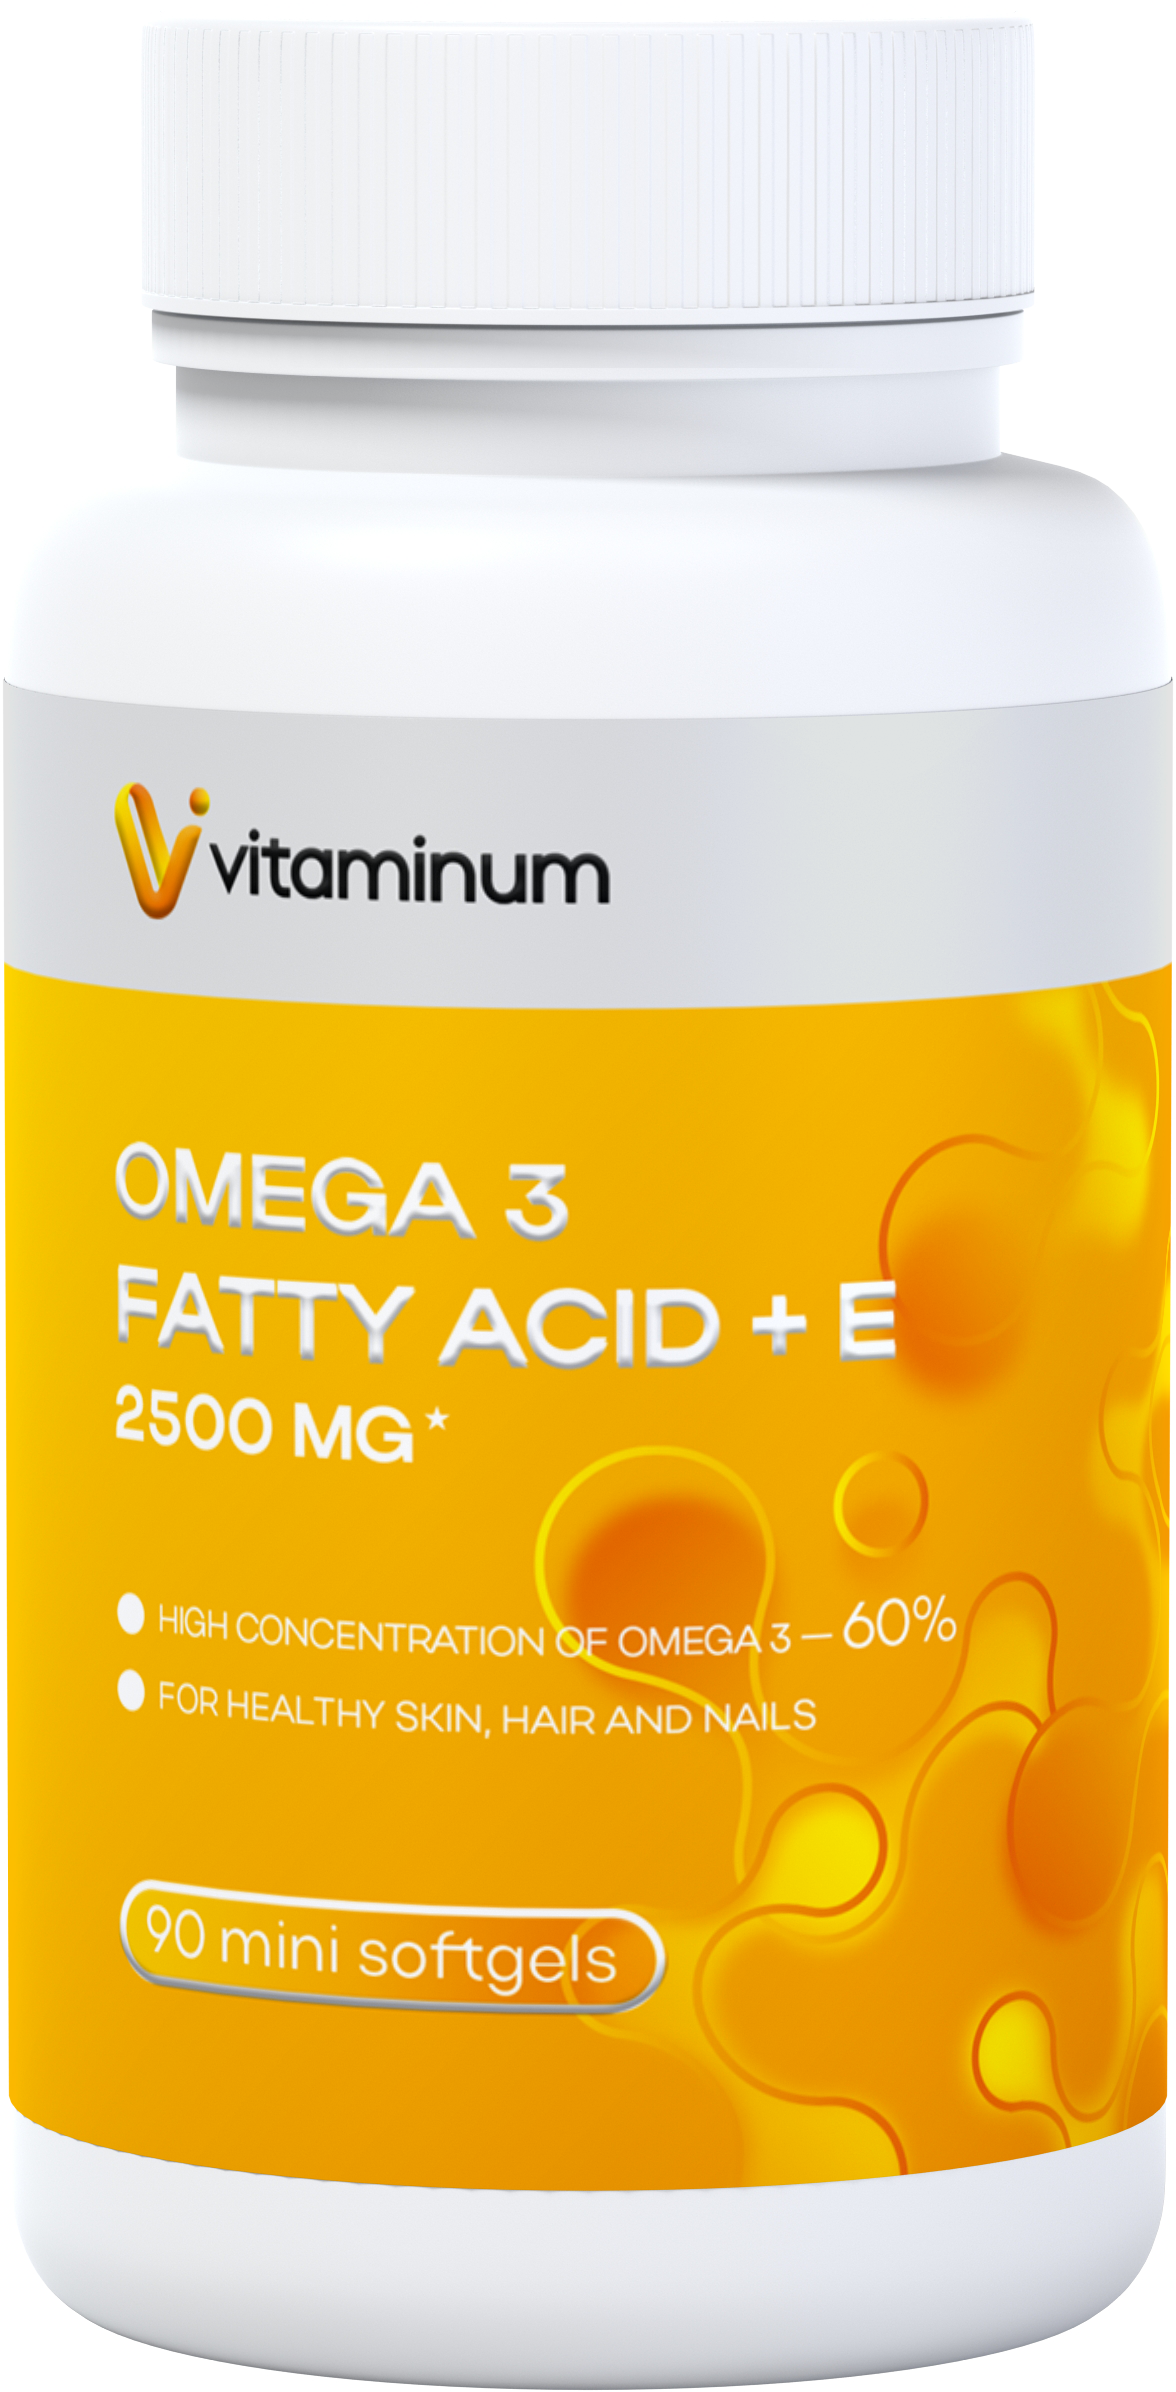  Vitaminum ОМЕГА 3 60% + витамин Е (2500 MG*) 90 капсул 700 мг   в Мысках